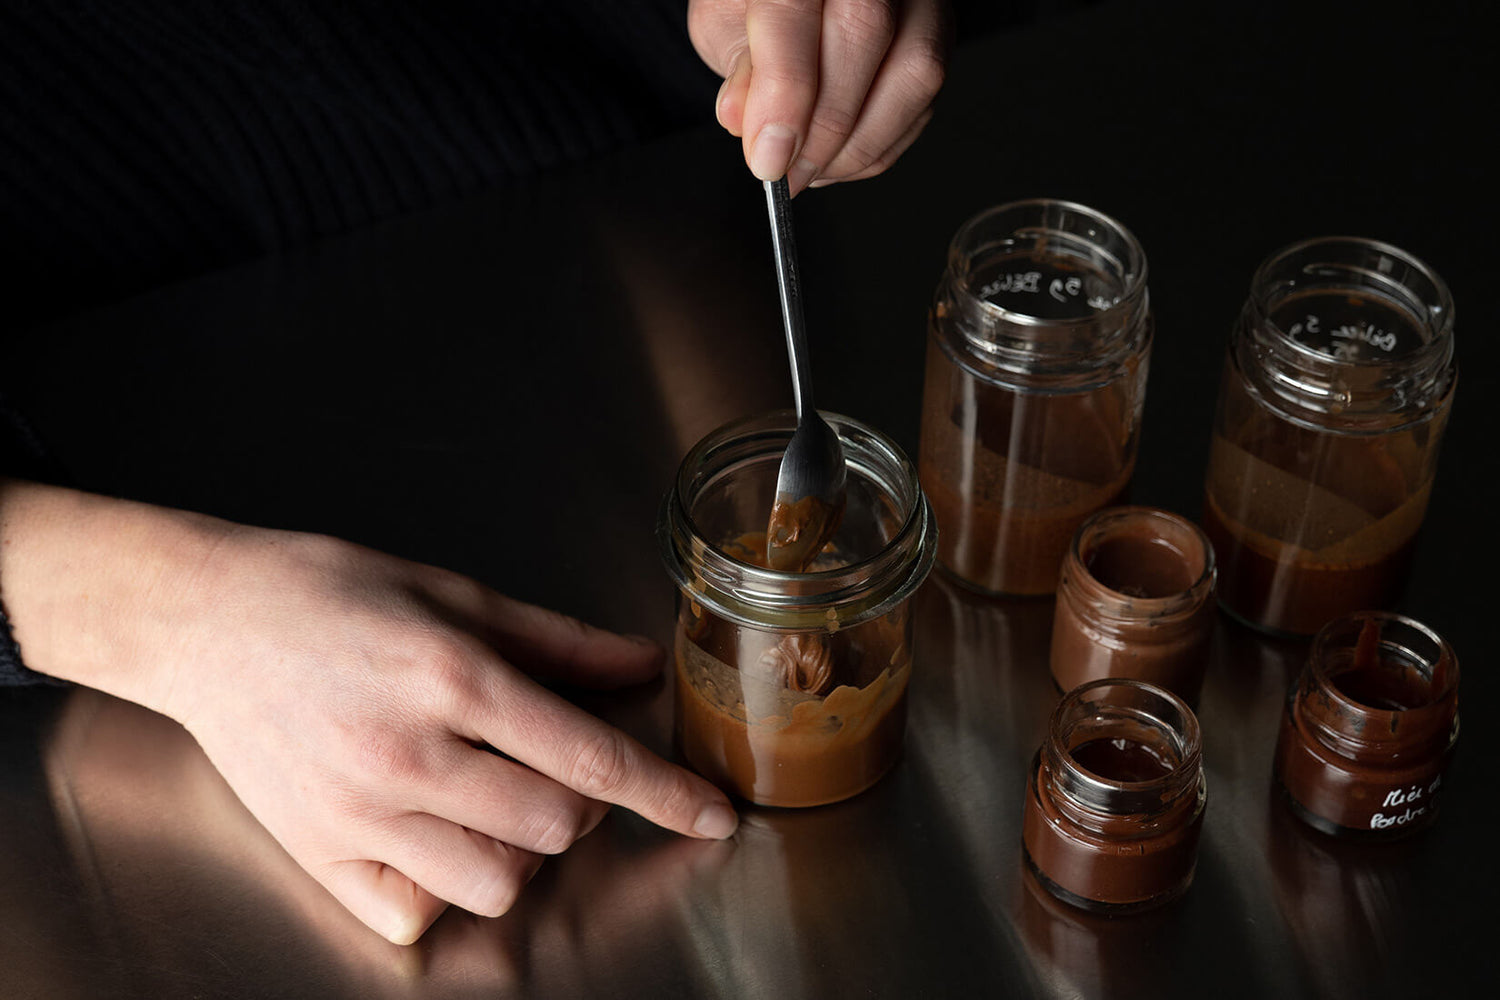 DE LA ROSÉE - Honey craft - About